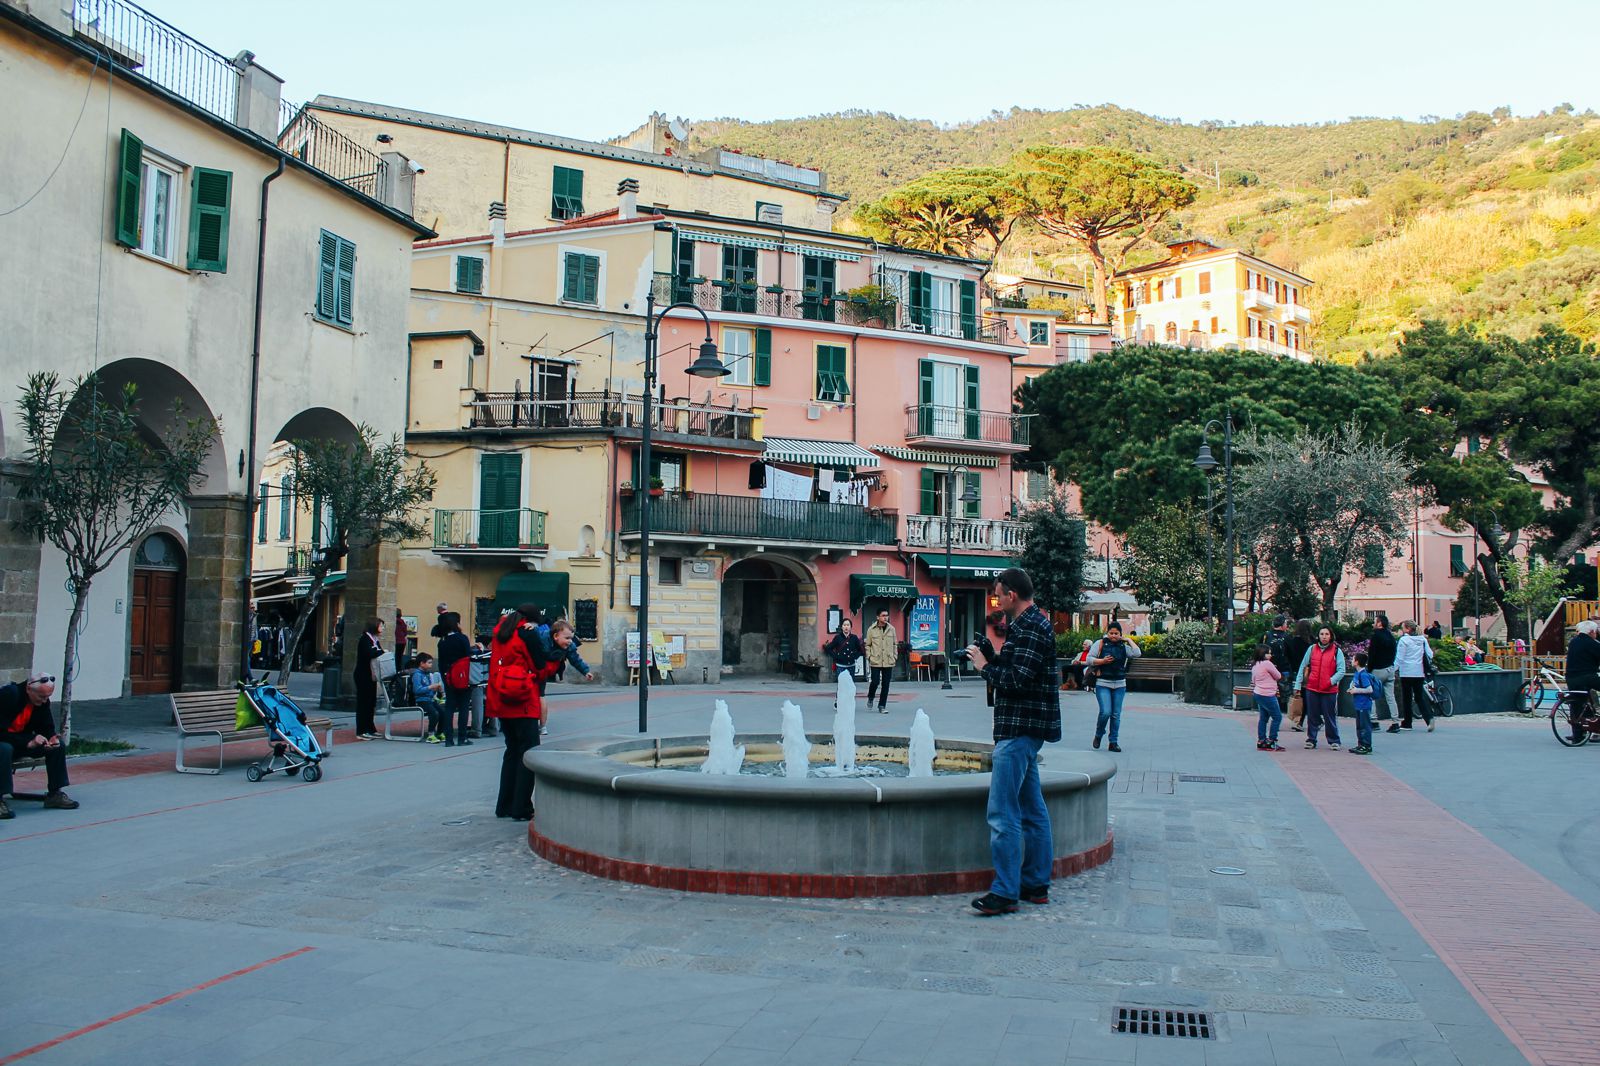 Monterosso al Mare in Cinque Terre, Italy - The Photo Diary! [5 of 5] (7)